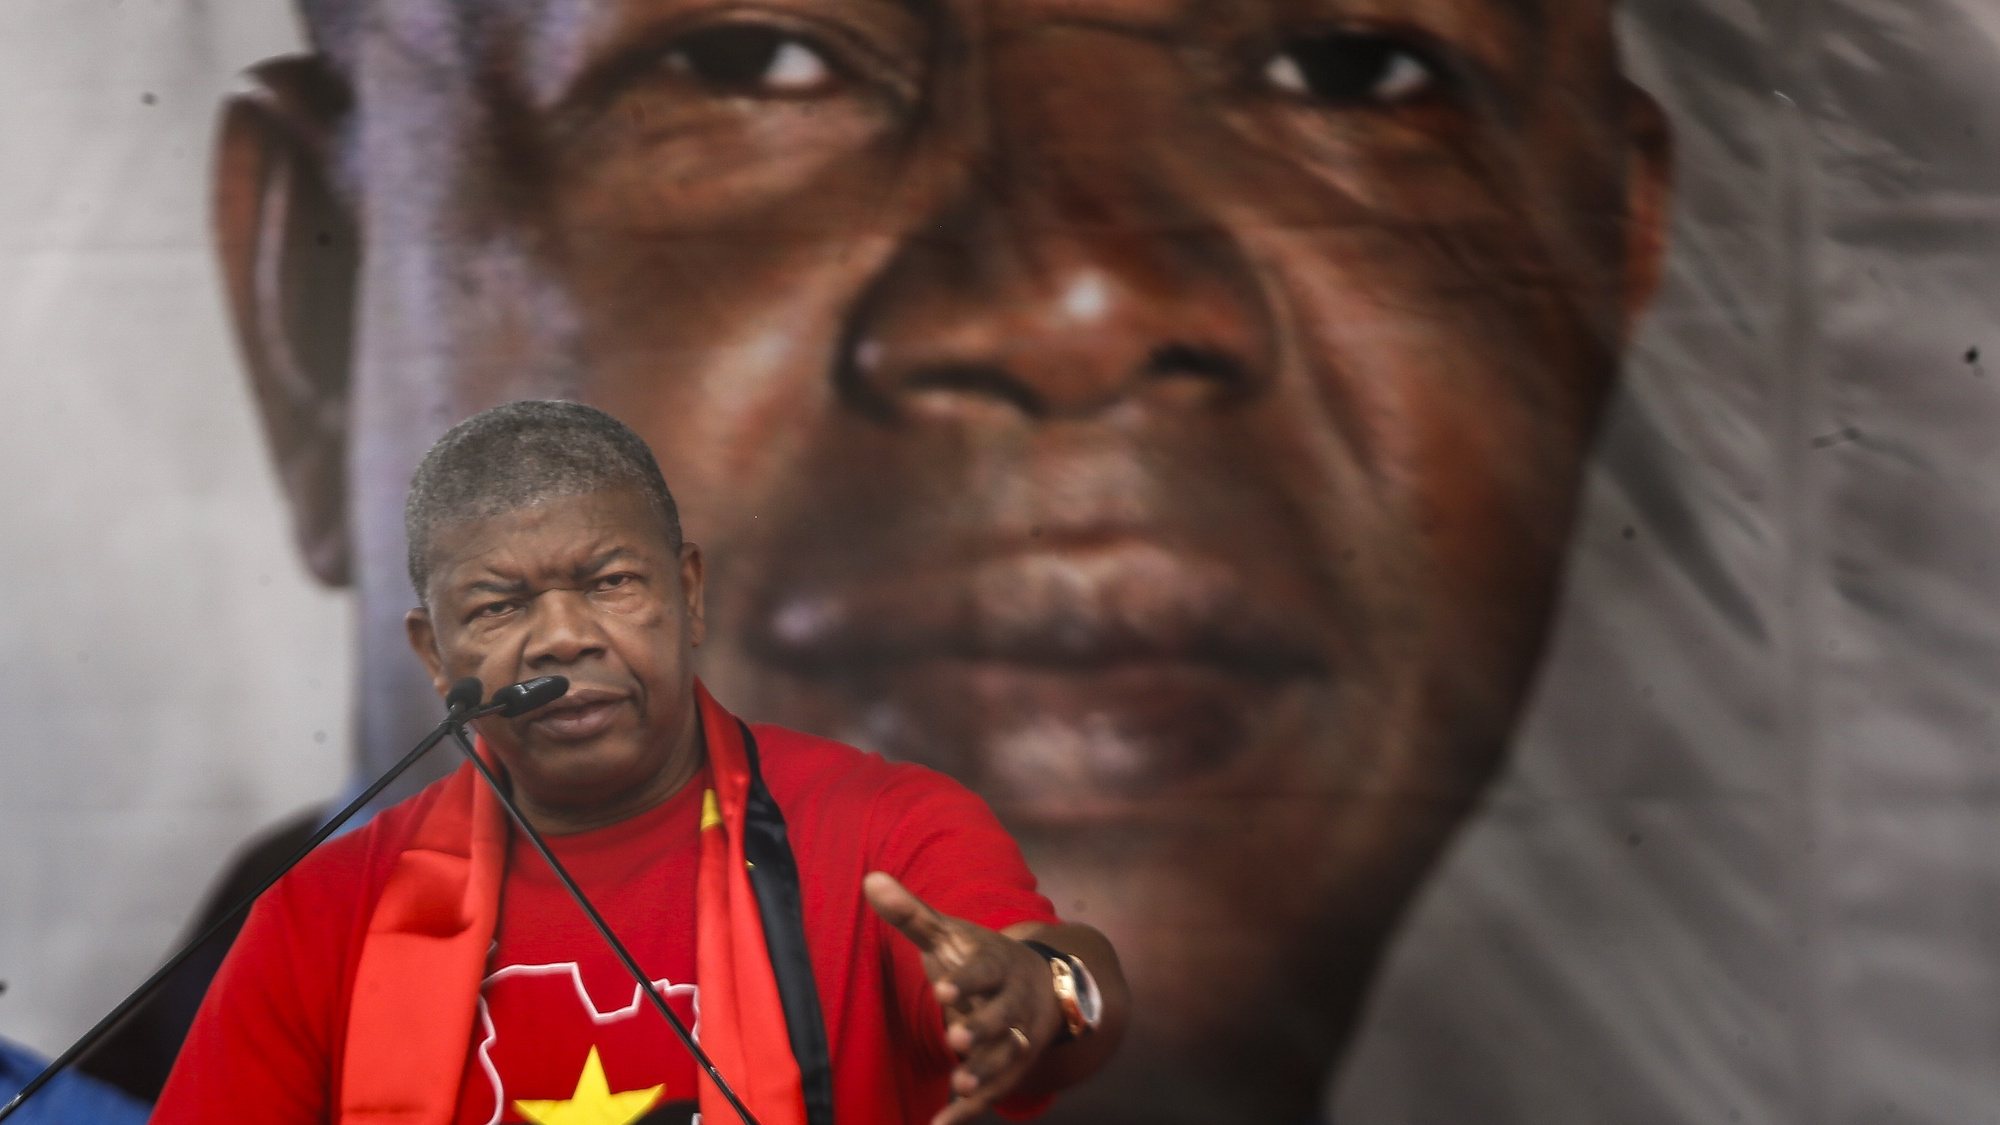 Ato de abertura da campanha do Movimento Popular de Libertação de Angola (MPLA) com vista às eleições gerais de 24 de agosto, com a presença de João Lourenço, em Camama, Luanda. AMPE ROGÉRIO/LUSA